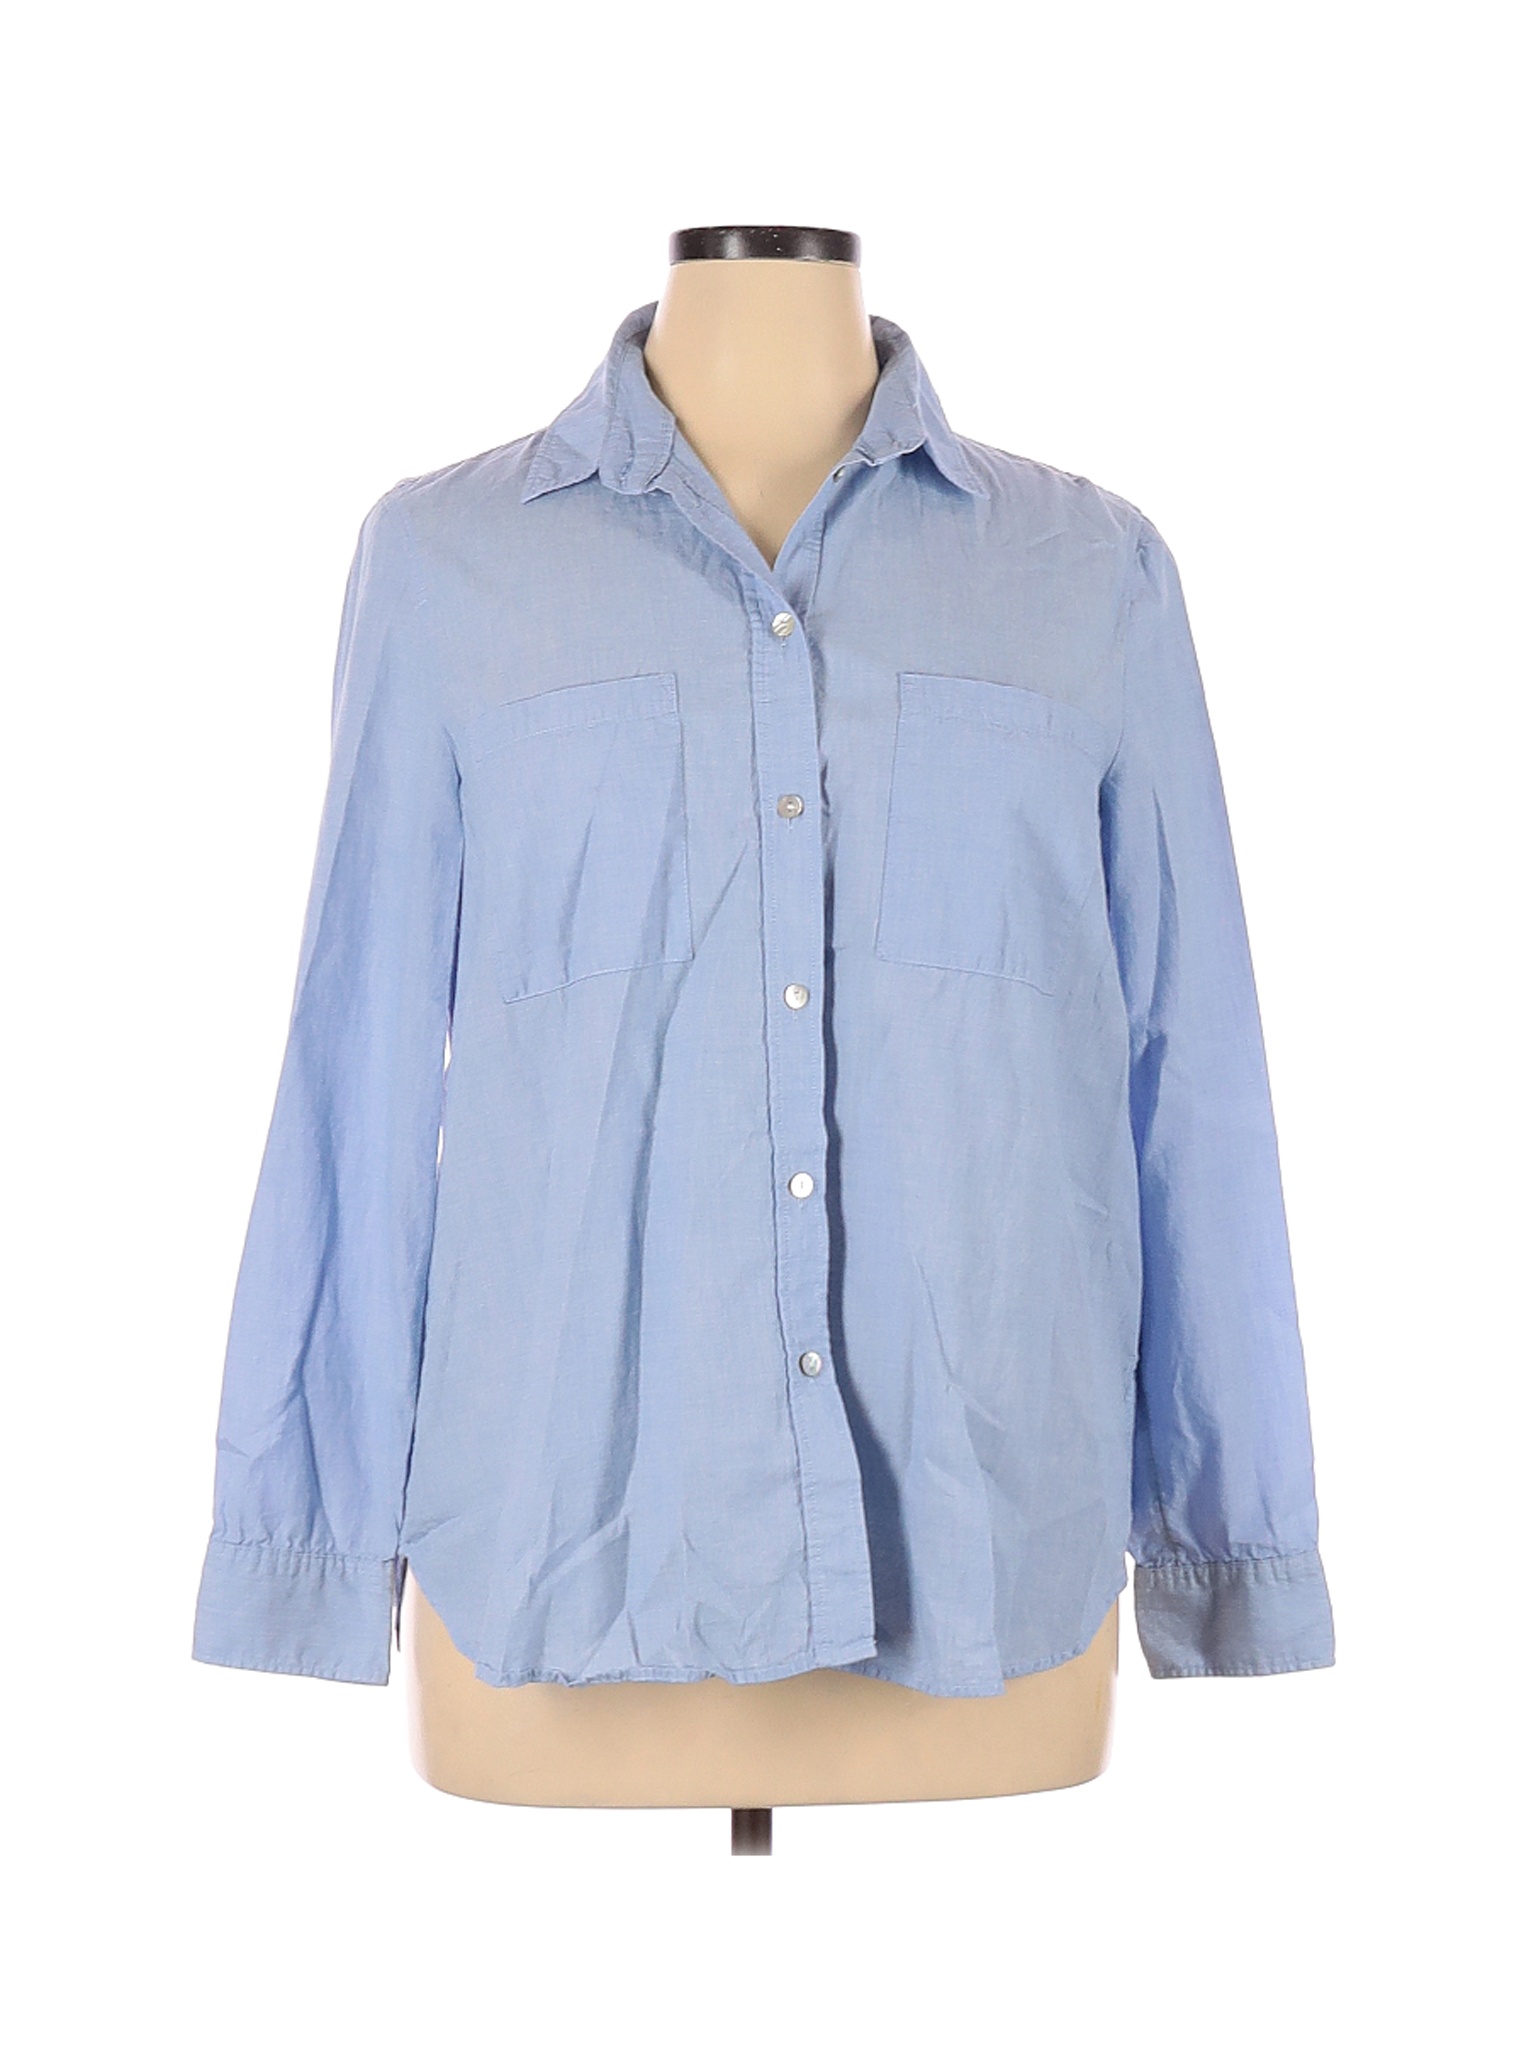 H&M Women Blue Long Sleeve Button-Down Shirt 16 | eBay